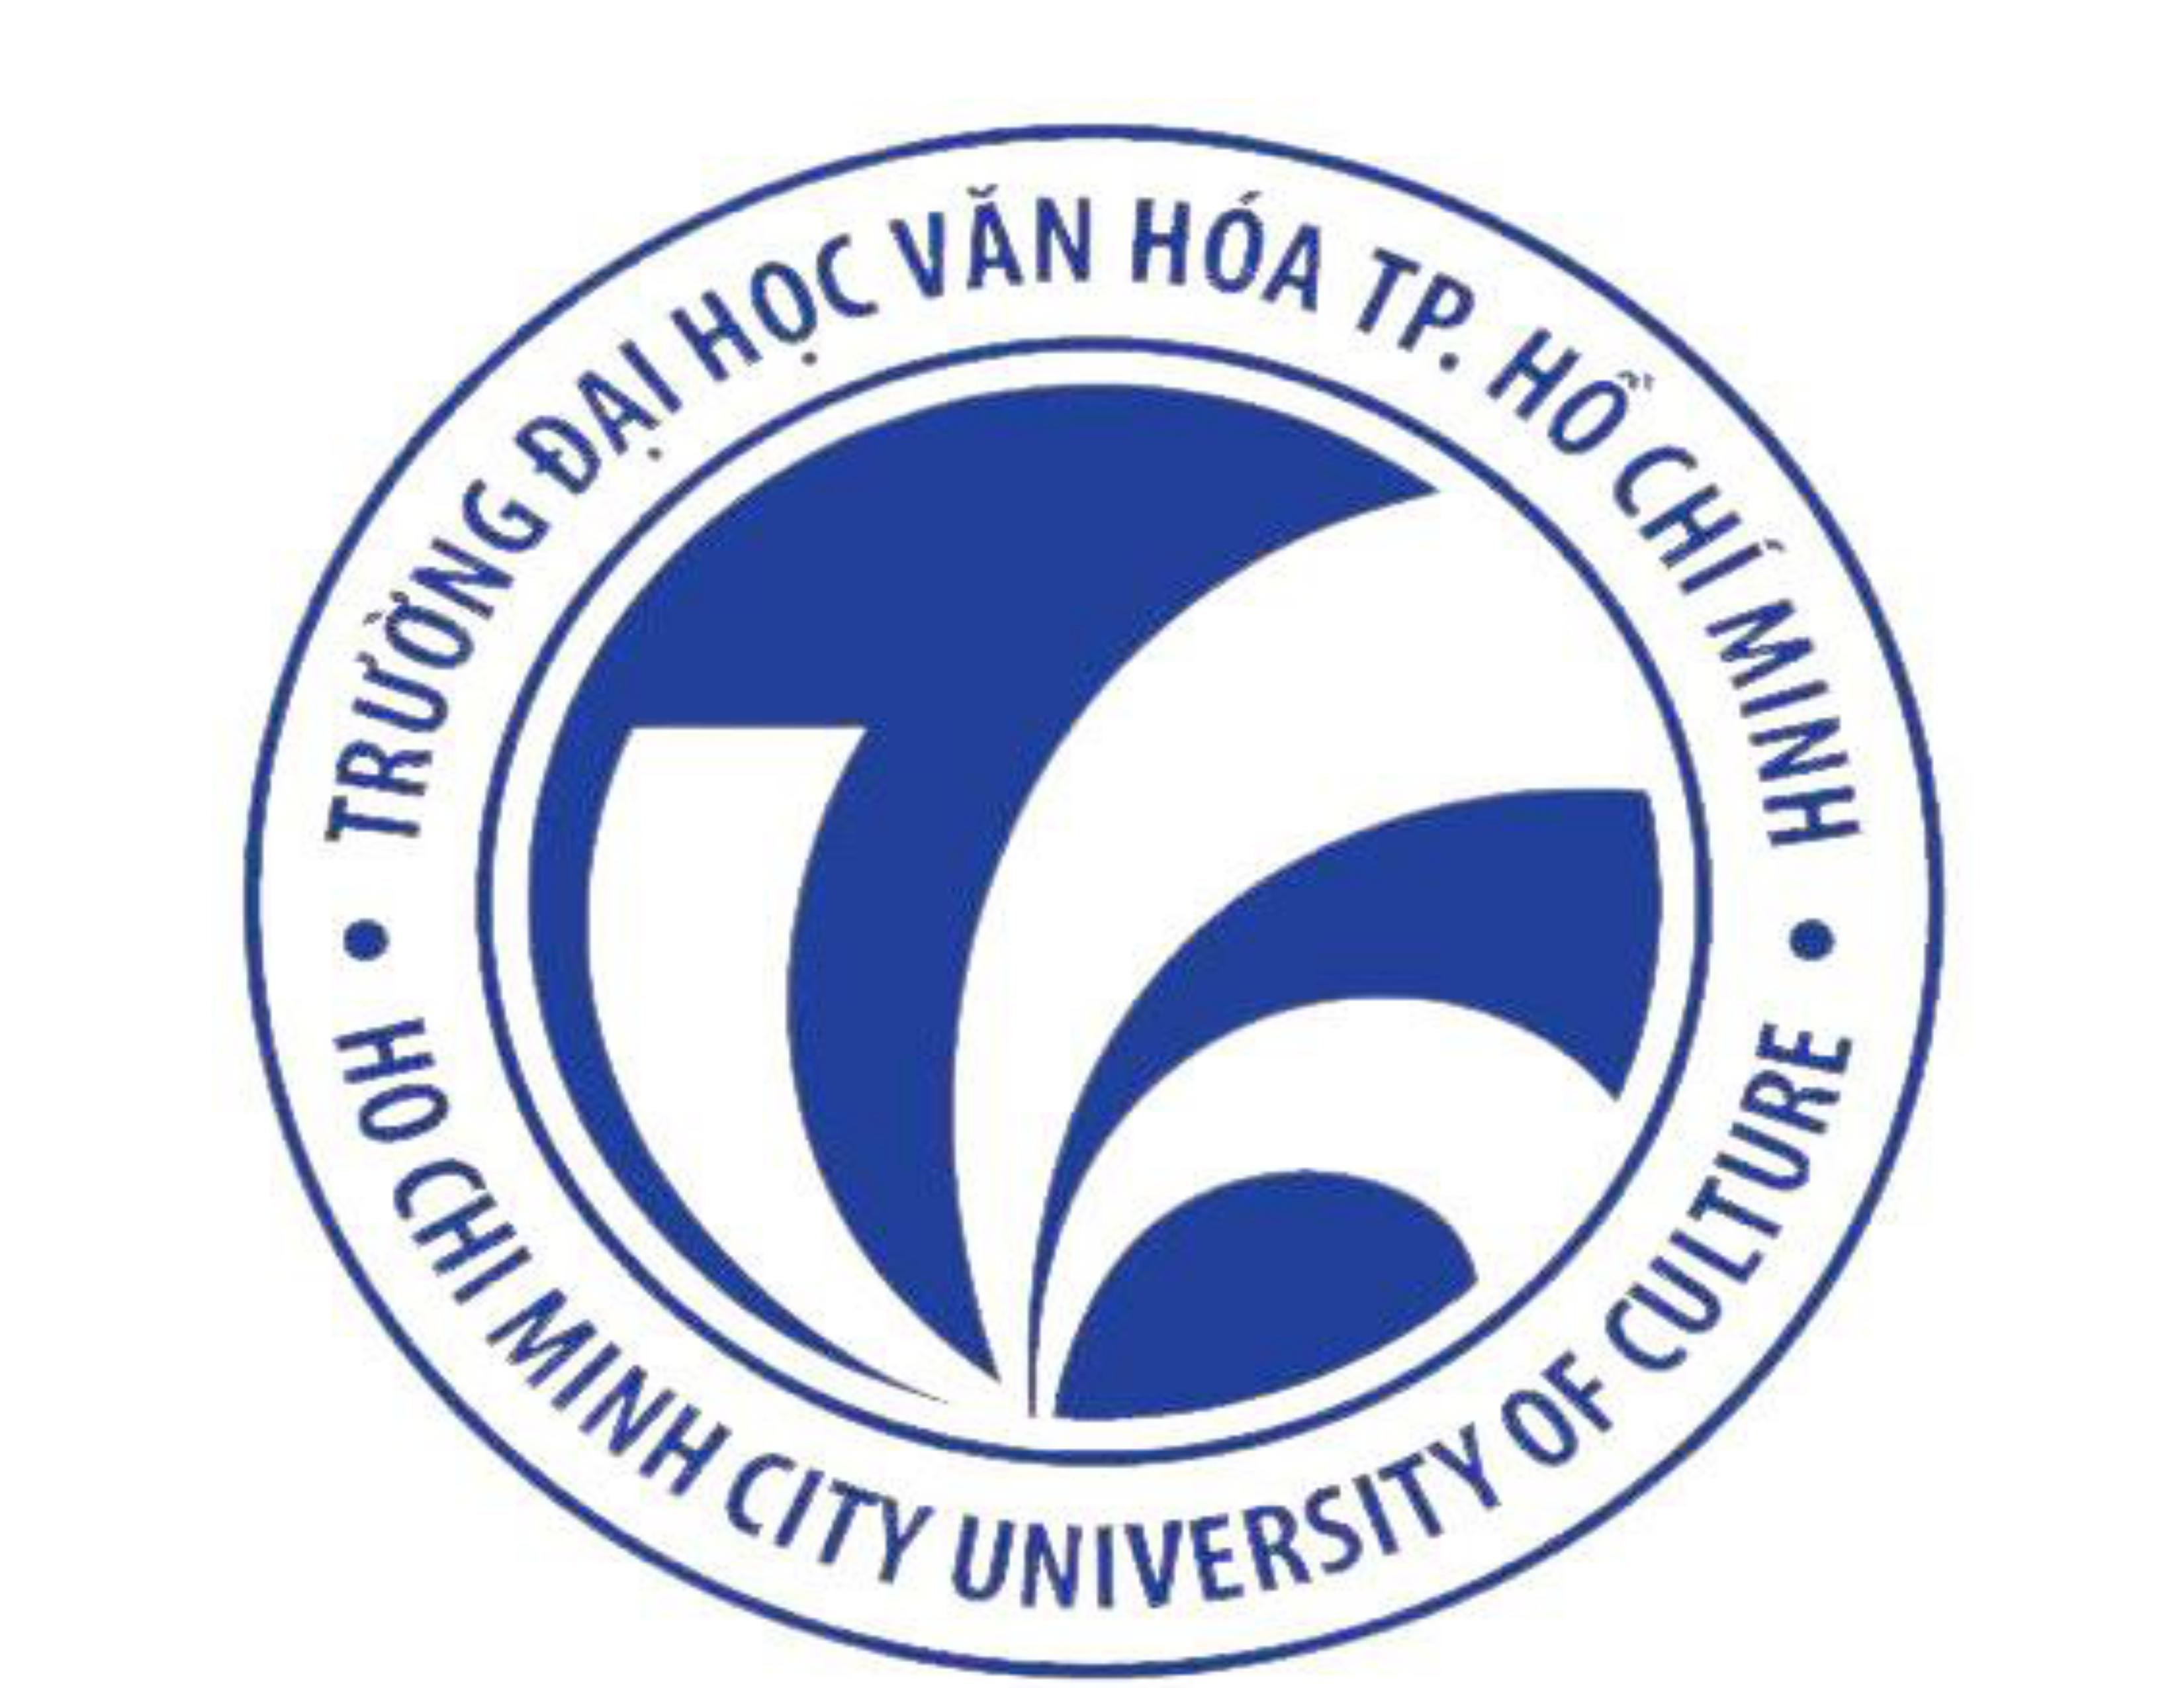 Công tác tổ chức và quản lí hoạt động văn hóa - nghệ thuật và giảng dạy âm nhạc tại các trường Trung học cơ sở công lập Quận Phú Nhuận Thành phố Hồ Chí Minh